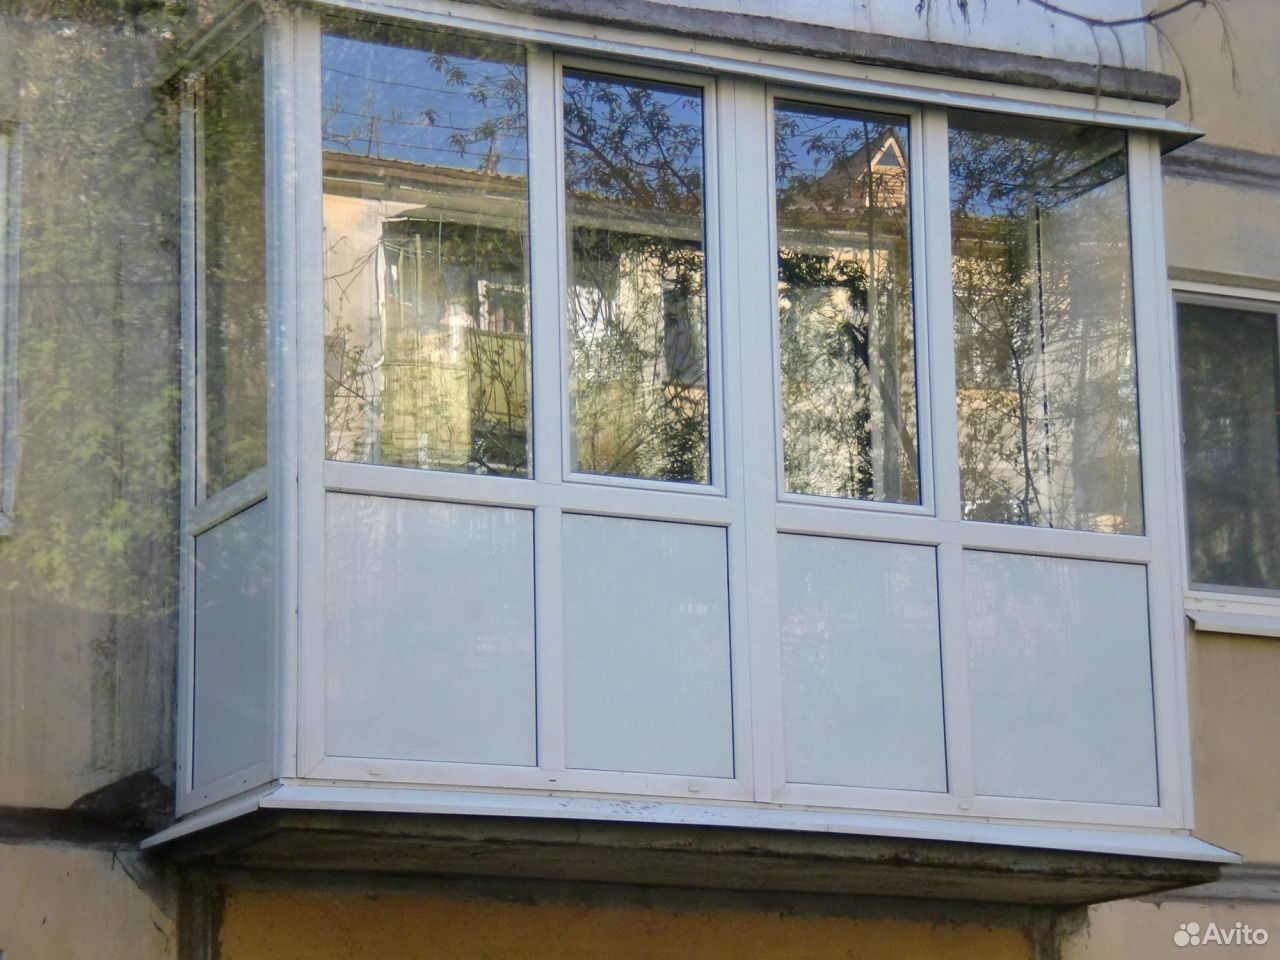 Пластиковые окна алматы - окна / двери / балконы алматы на kdo.kz.